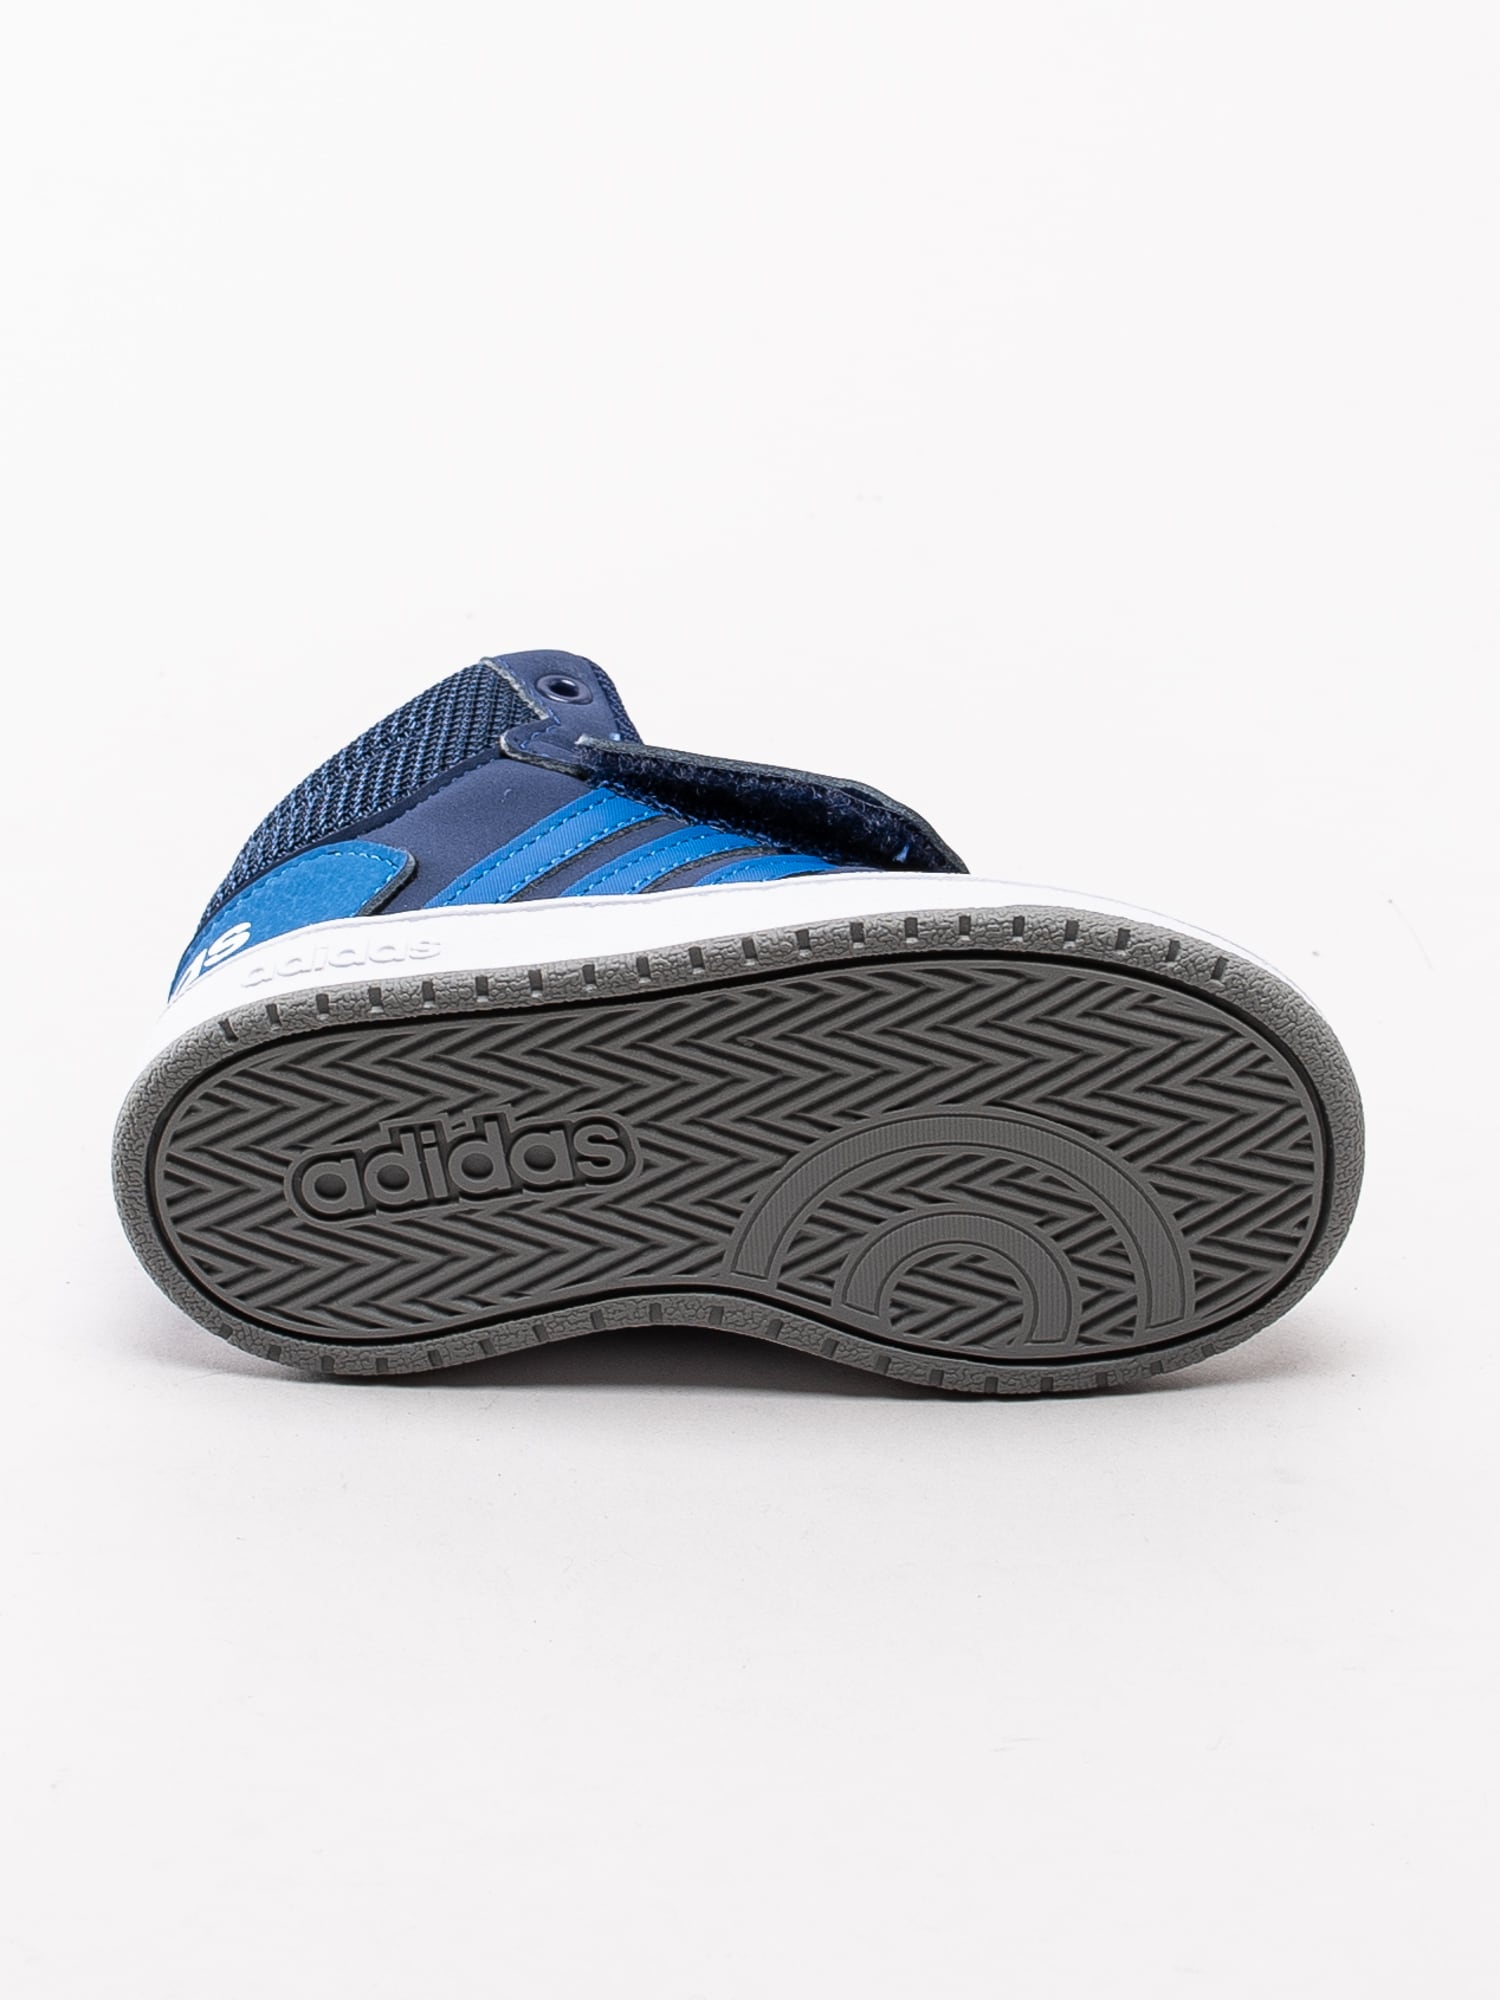 56193008 Adidas Hoops Mid 2.0 Infant EE6714 mörkblå höga sneakers för dem små med kardborre-5